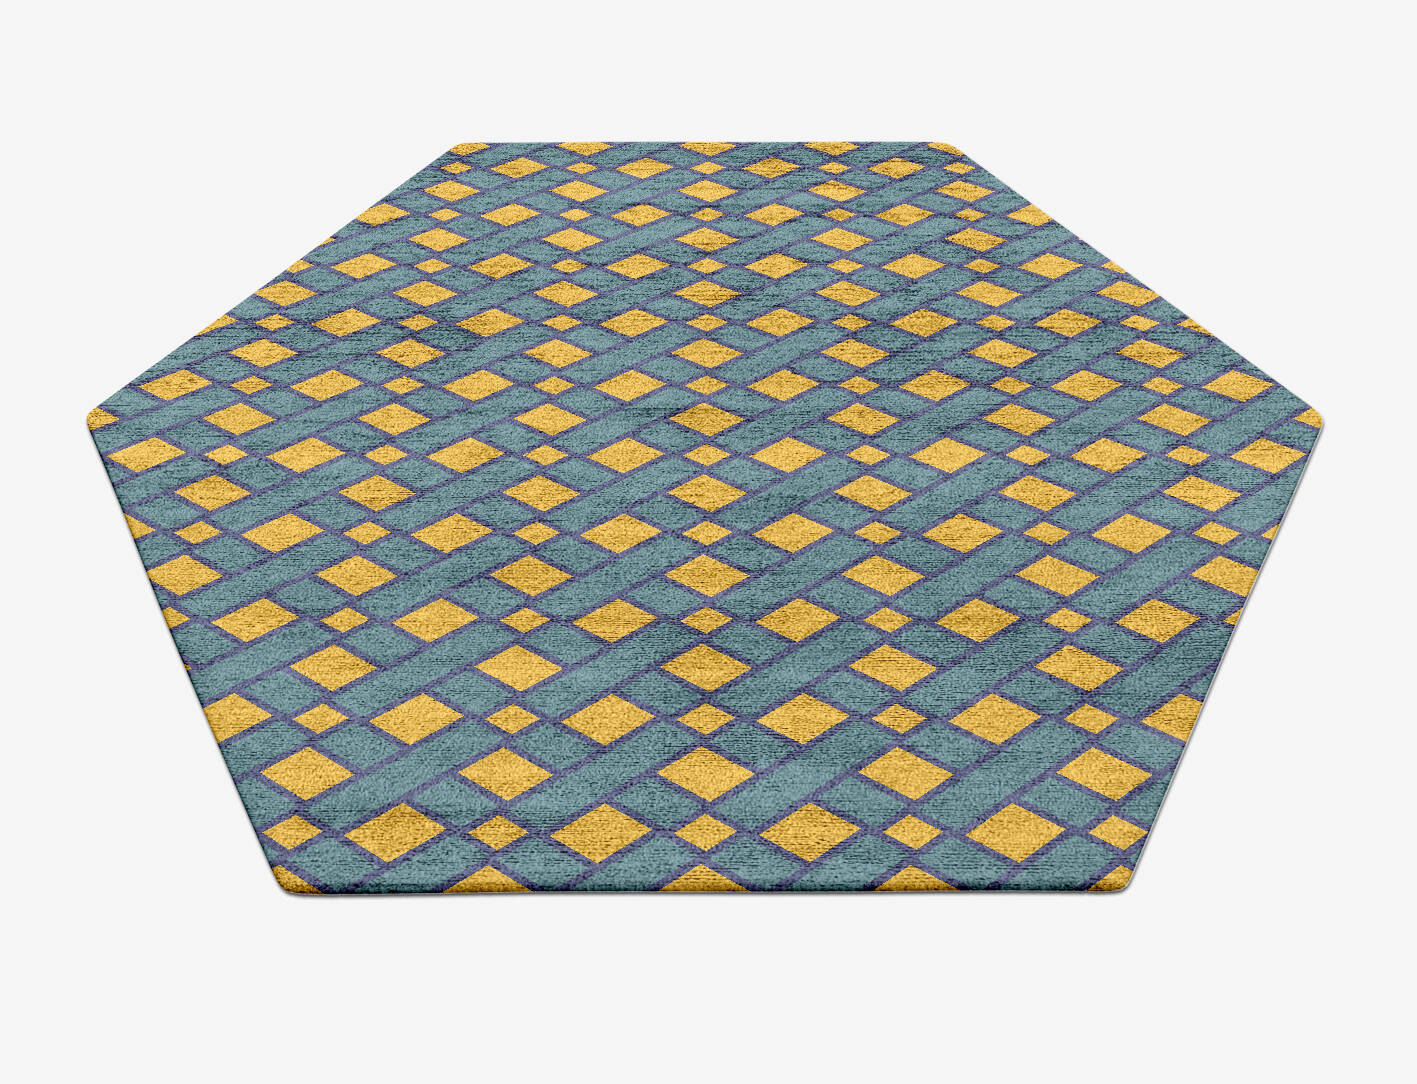 Argyle Geometric Hexagon Hand Tufted Bamboo Silk Custom Rug by Rug Artisan